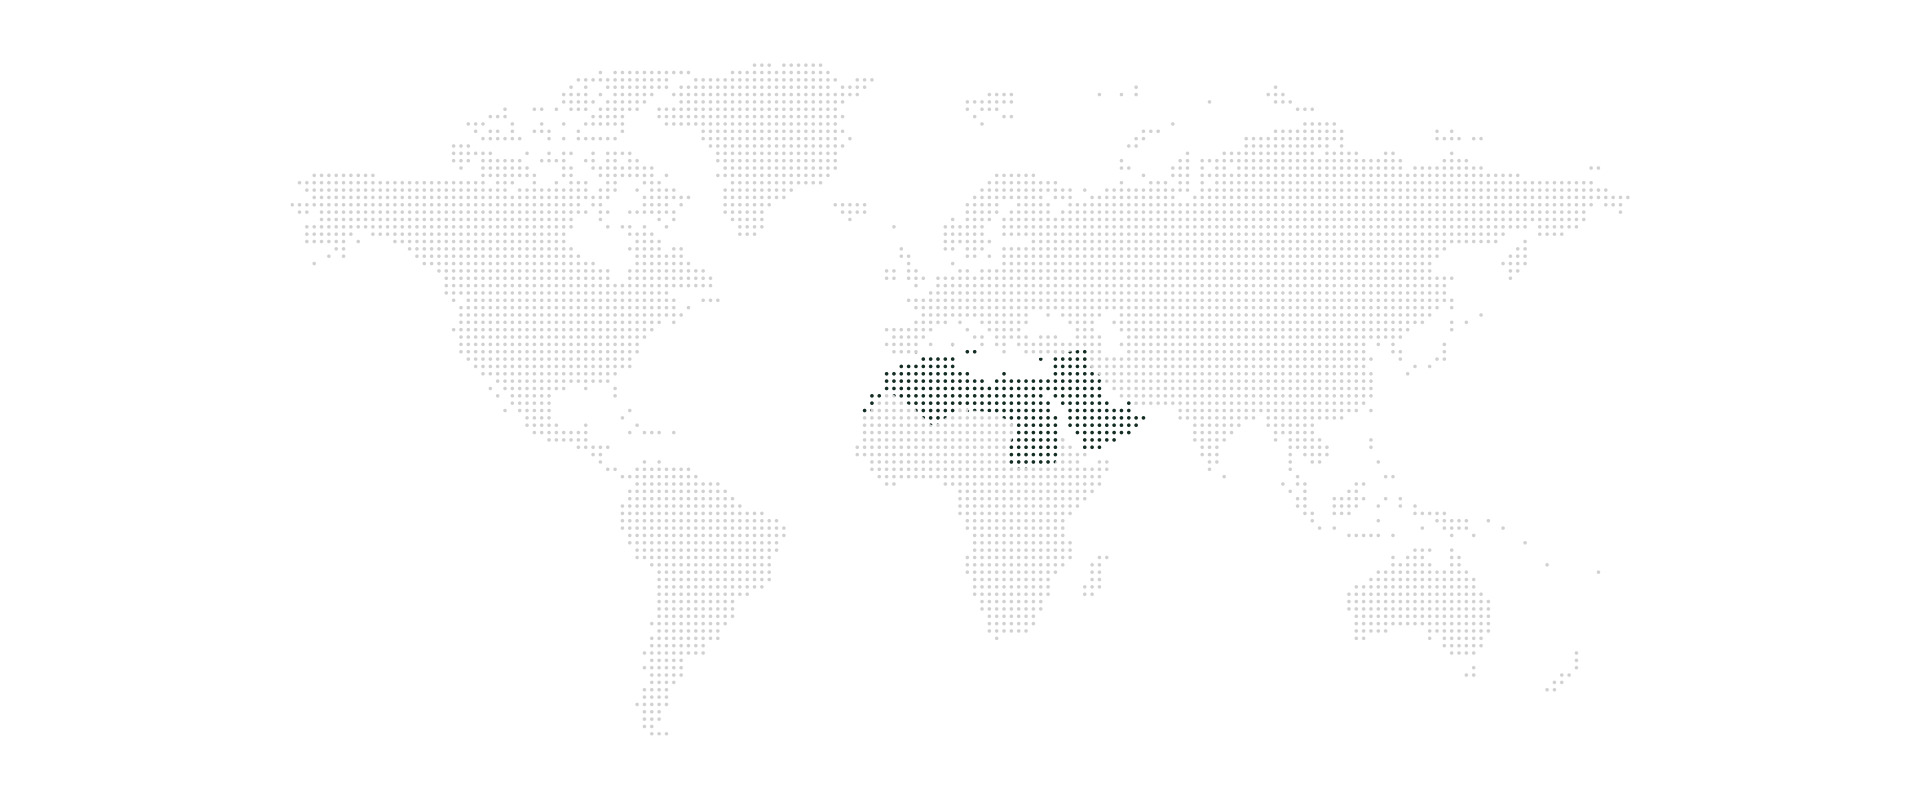 PlusVC خريطة العالم